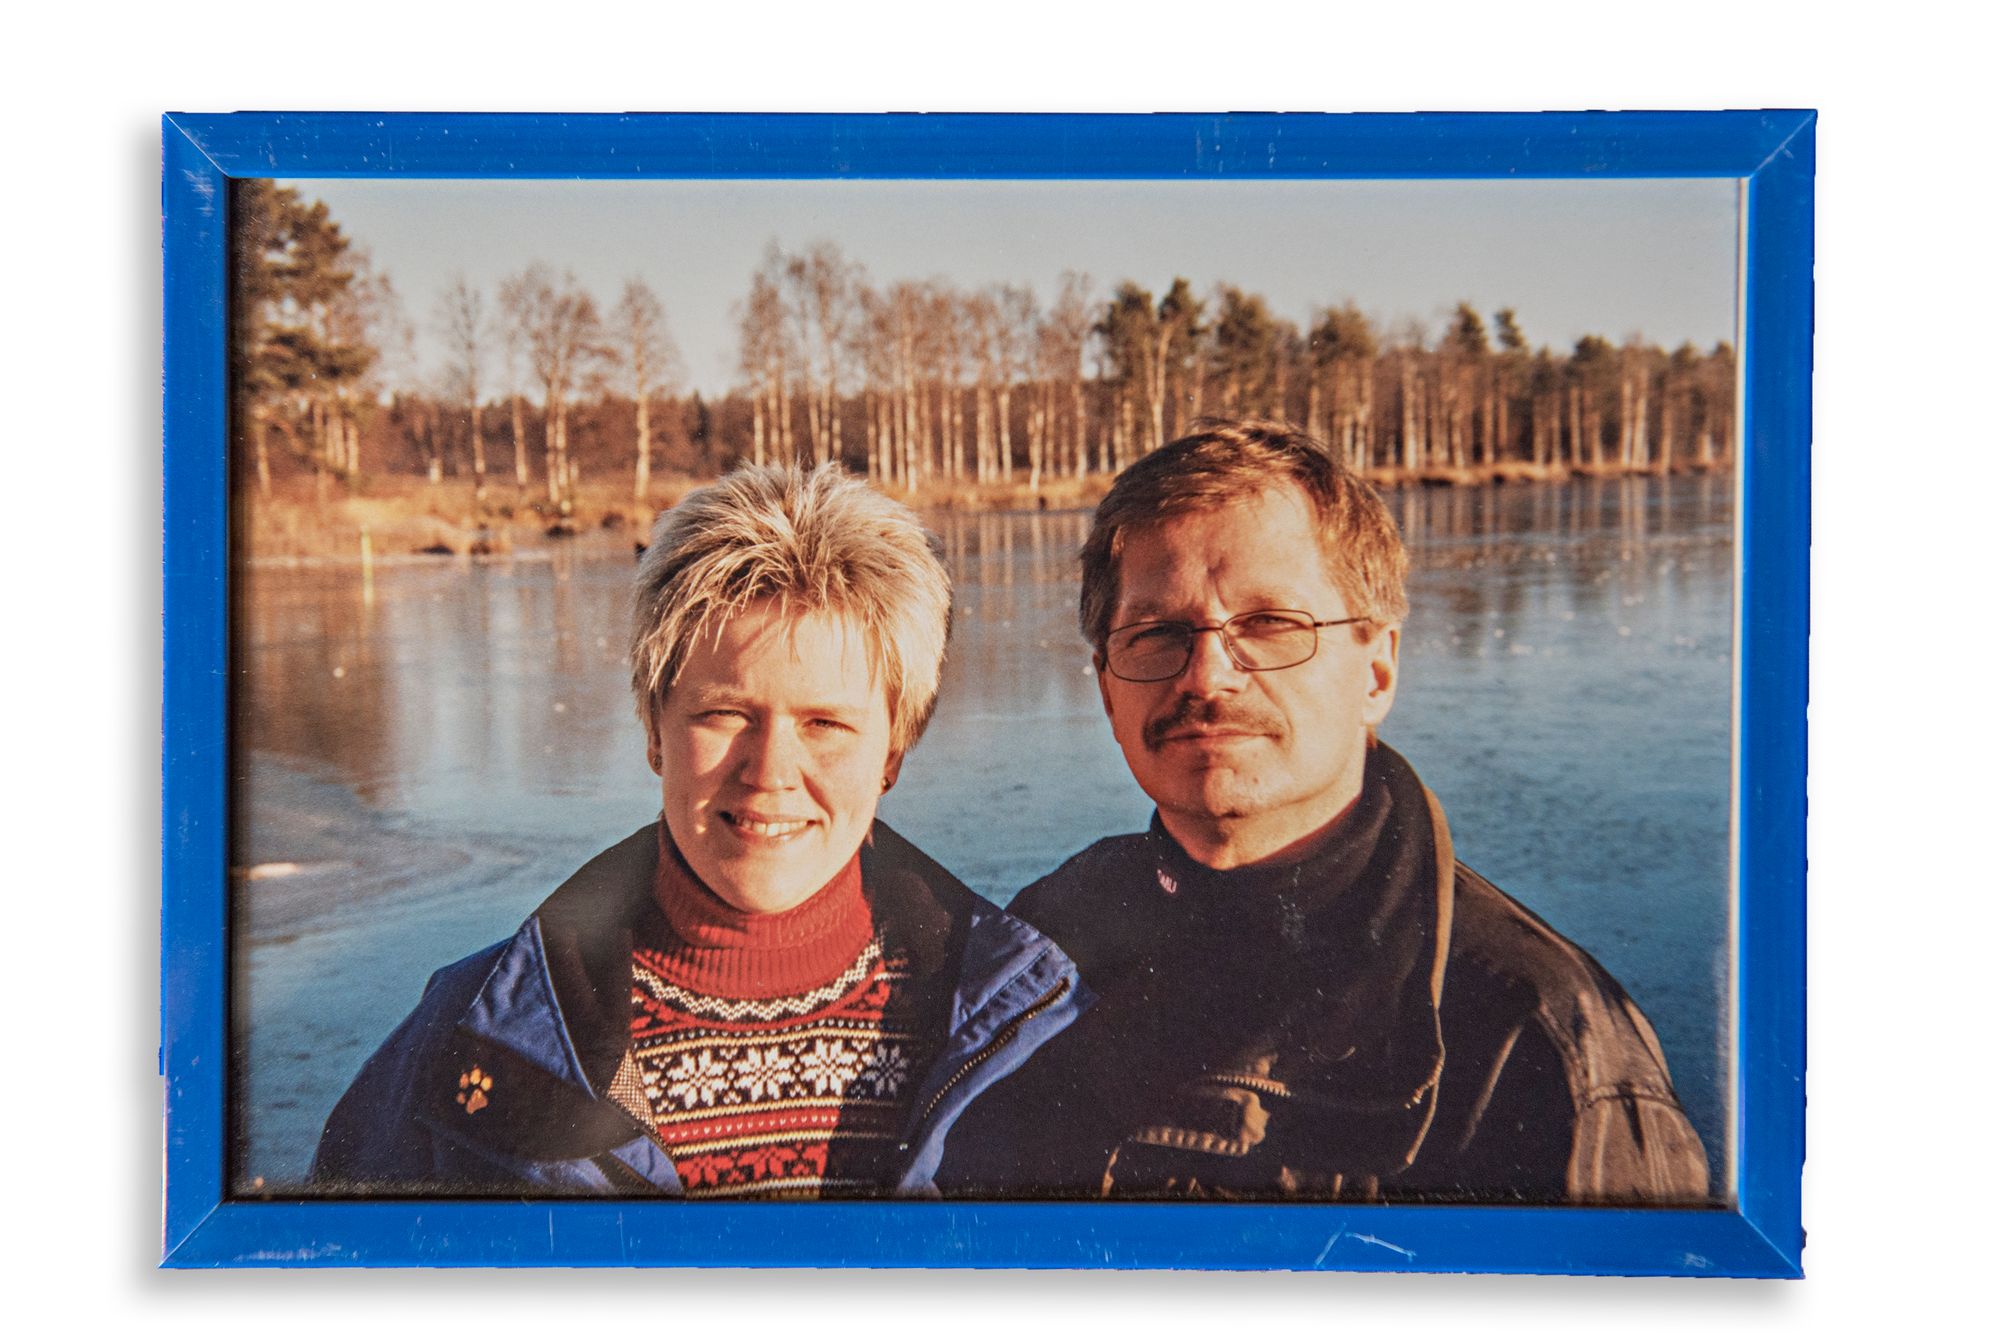 Christinan isä otti tämän kuvan muistoksi Suomen-vierailultaan. Kuva on otettu taukopaikalla lähellä Rovaniemeä. © Mannen ja Christinan kotialbumi